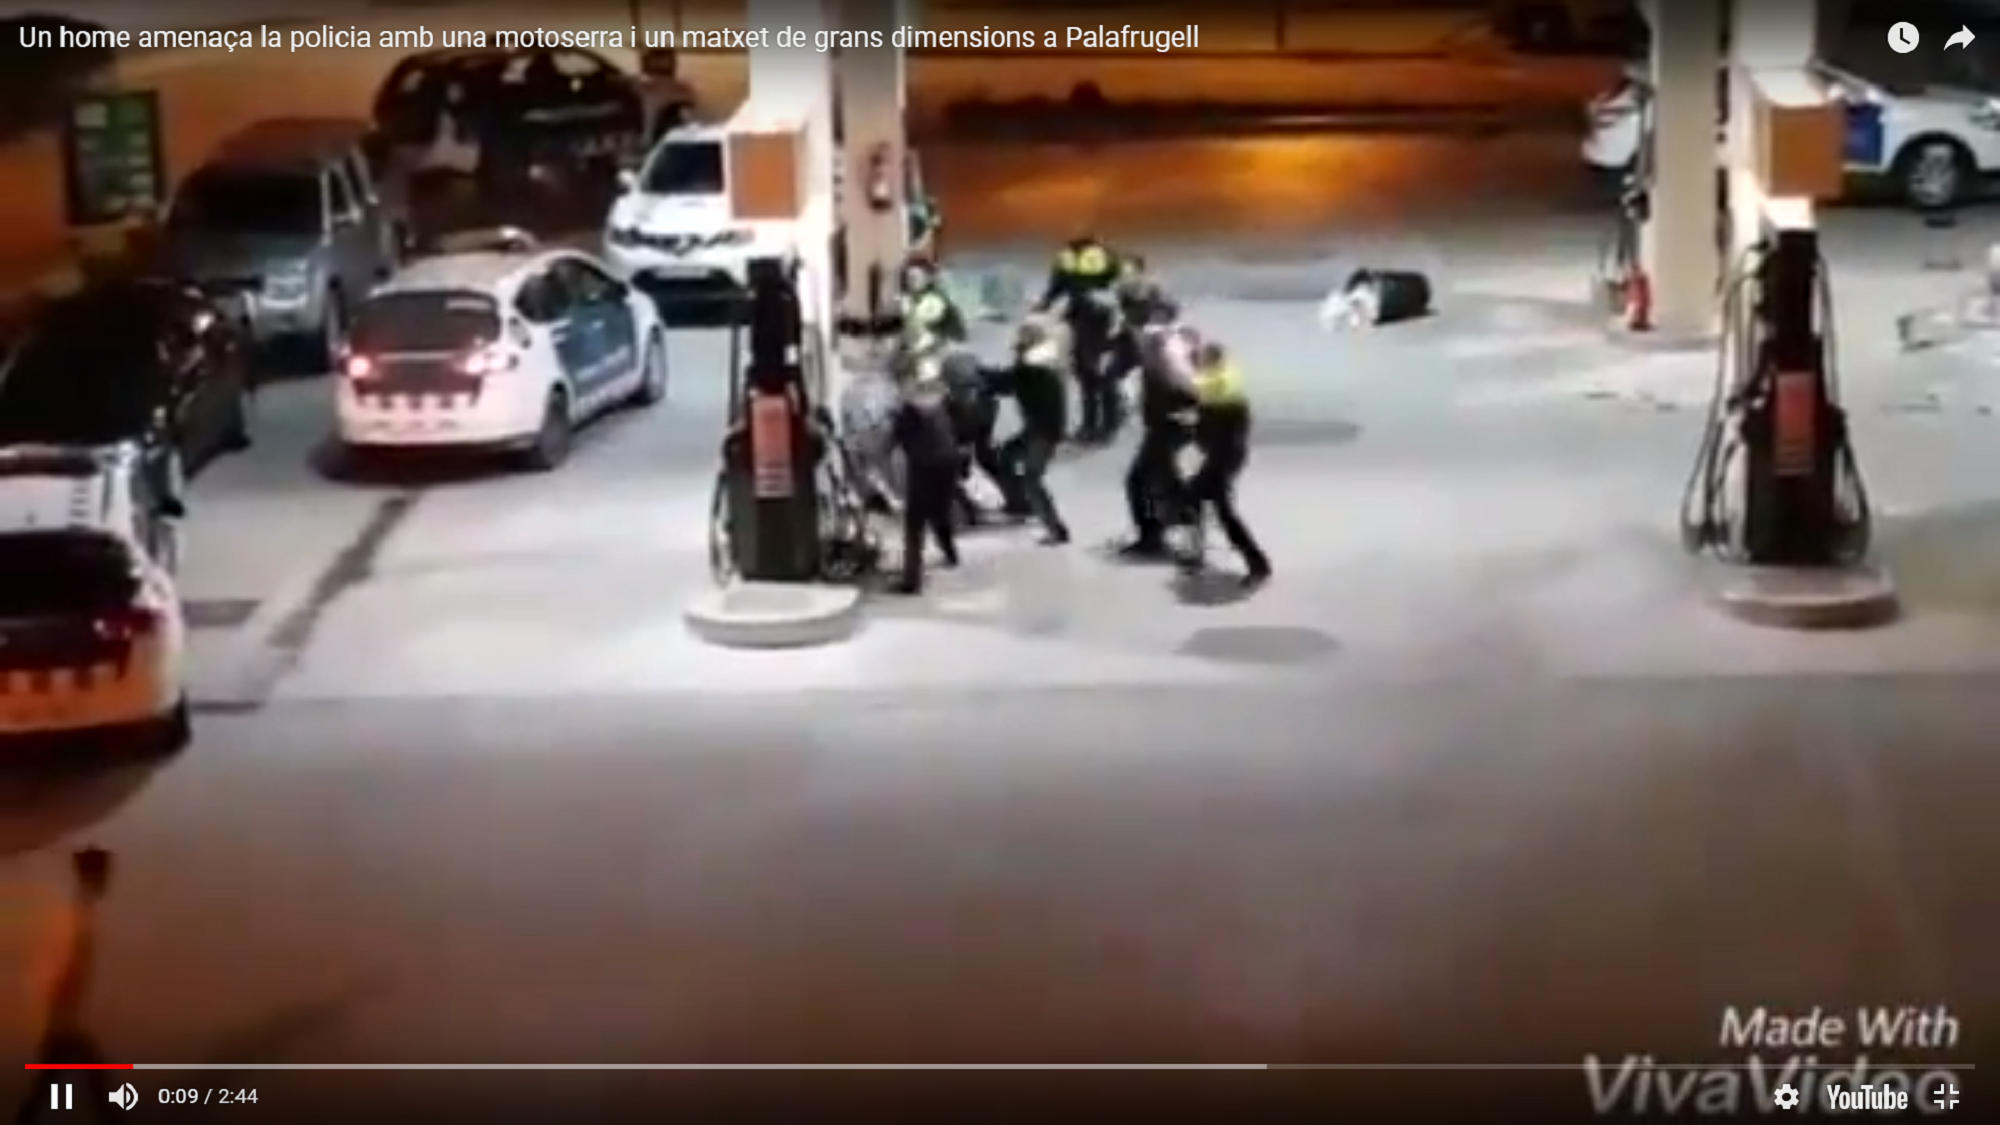 Un hombre amenaza a la policía con una motosierra y un machete en Palafrugell